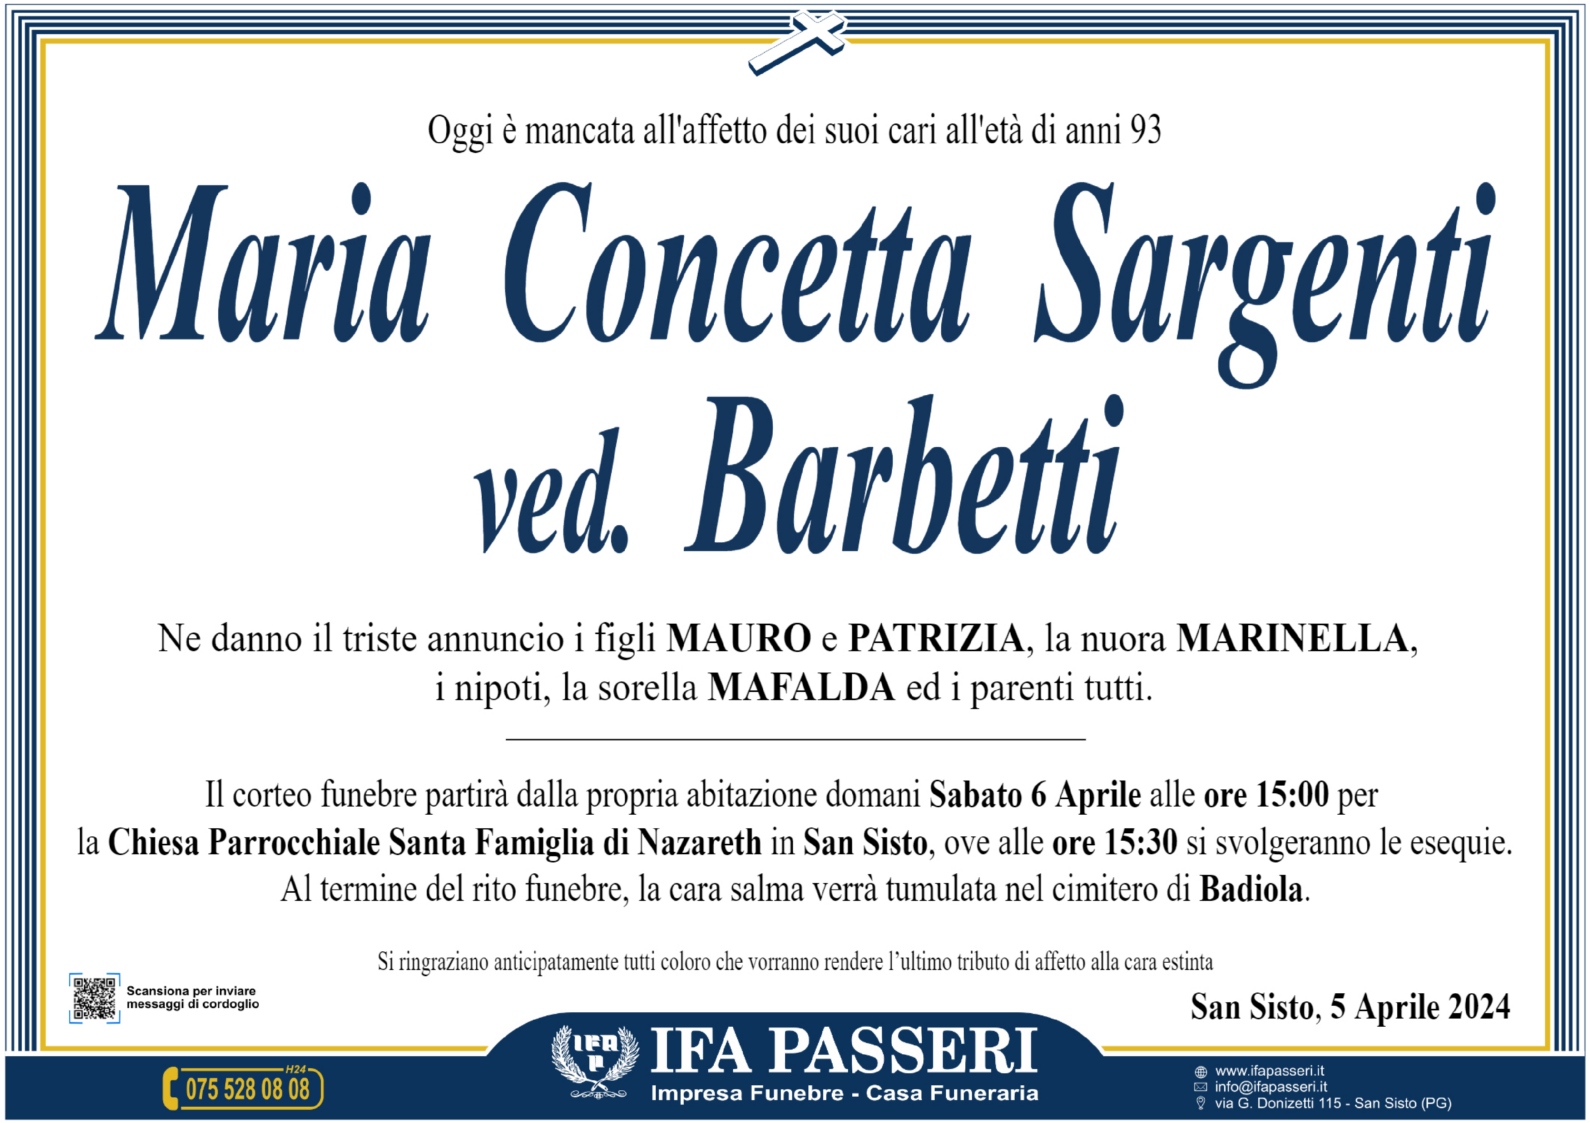 Maria Concetta Sargenti ved. Barbetti